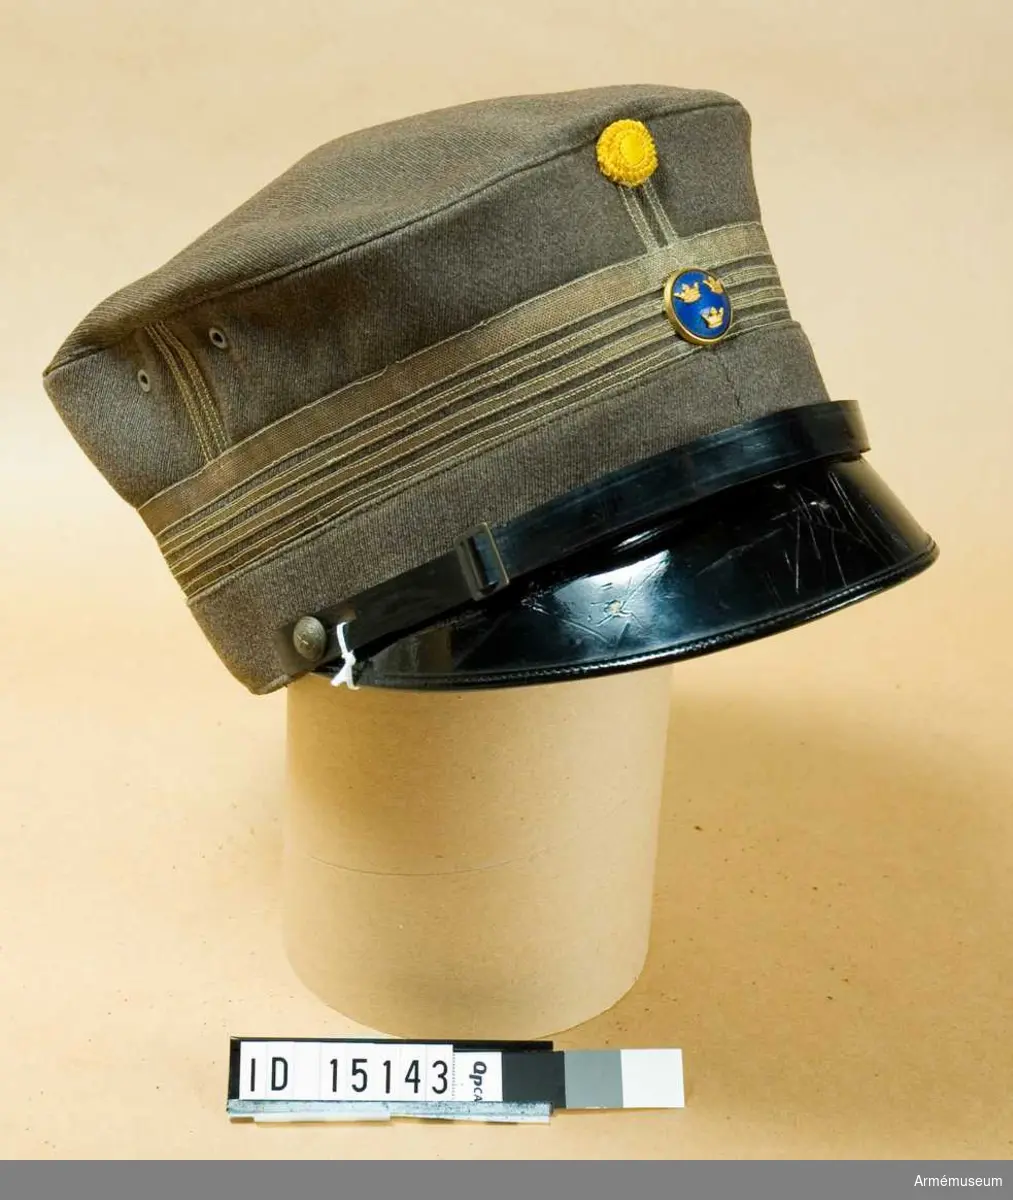 Grupp C I.
Ur uniform m/1923 för överste vid Generalstaben, bestående av  vapenrock, ridbyxor och mössa.